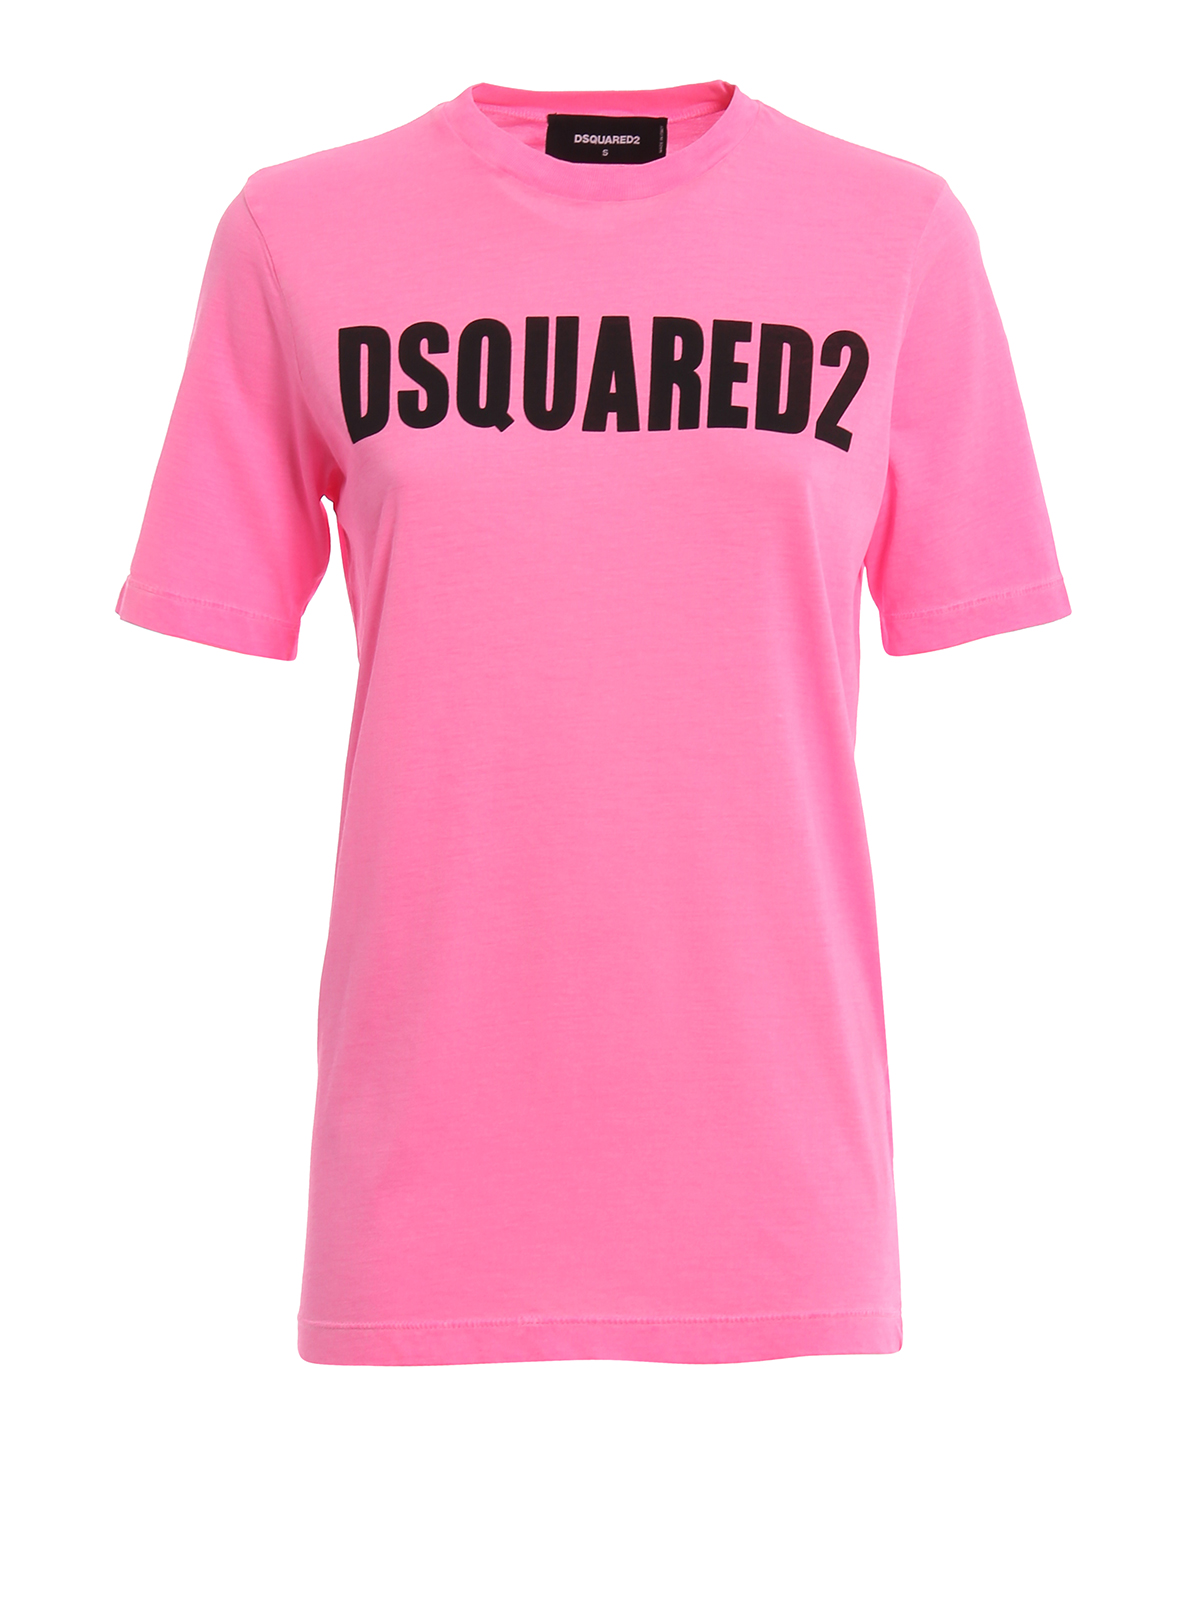 Donna T-shirt e top da T-shirt e top DSquared² T-SHIRT IN COTONE CON STAMPA LOGODSquared² in Cotone di colore Rosa 